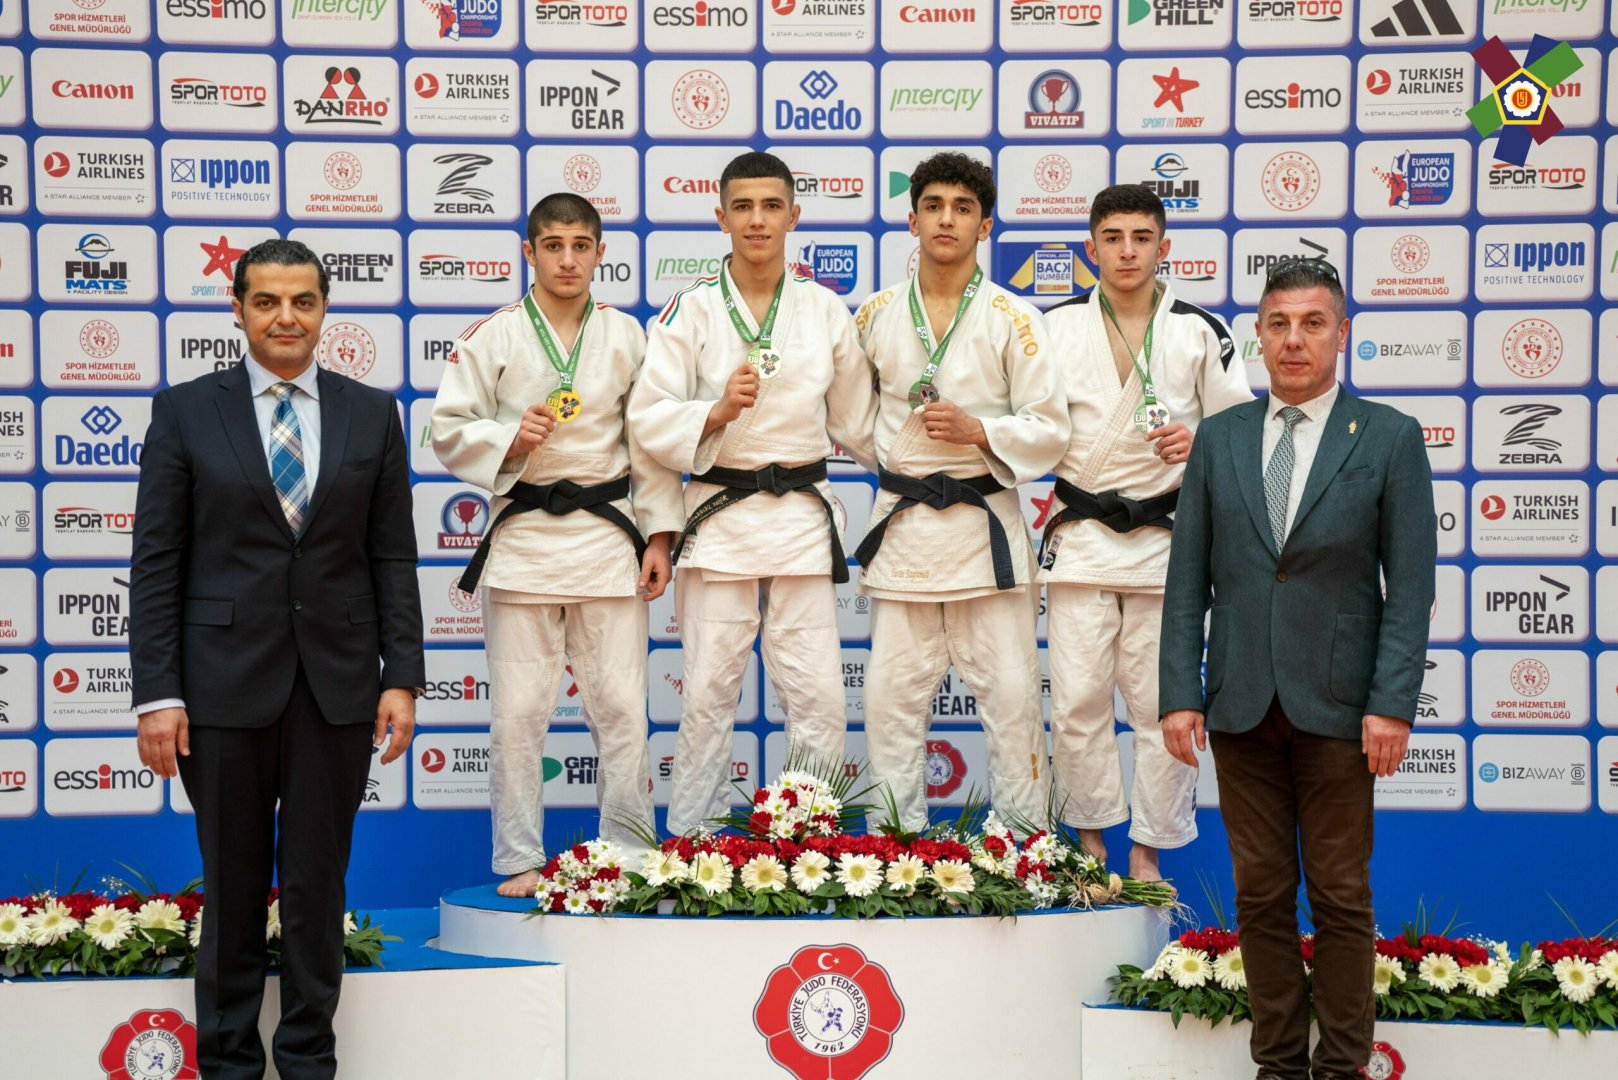 Азербайджанские дзюдоисты завоевали 12 медалей в первый день Кубка Европы в Турции (ФОТО)